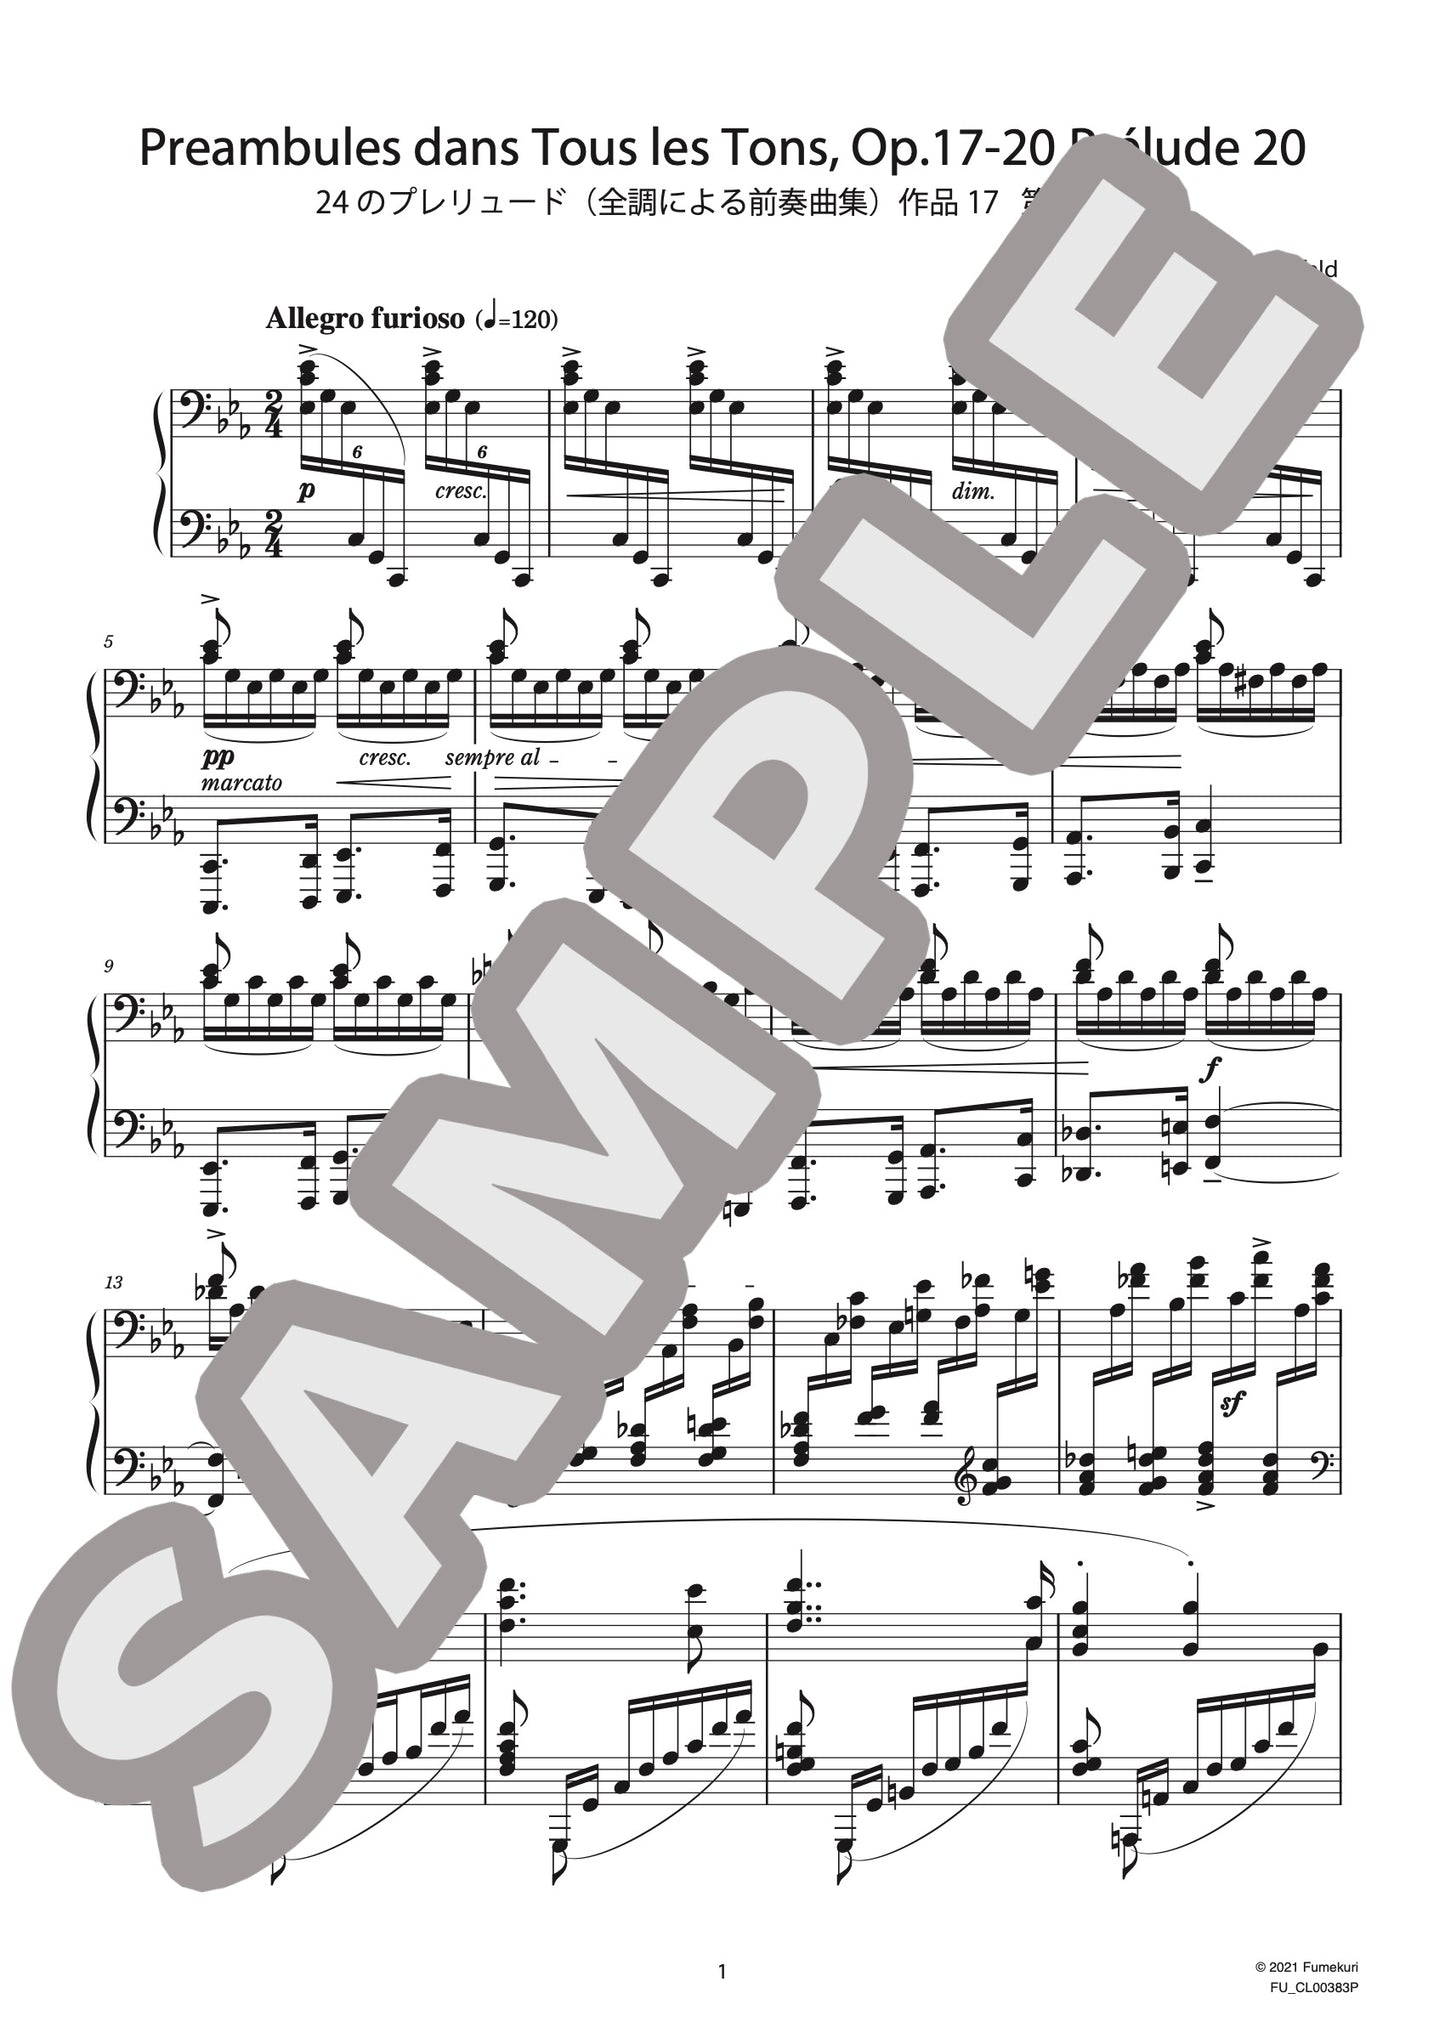 24のプレリュード（全調による前奏曲集）作品17 第20番（BLUMENFELD) / クラシック・オリジナル楽曲【中上級】